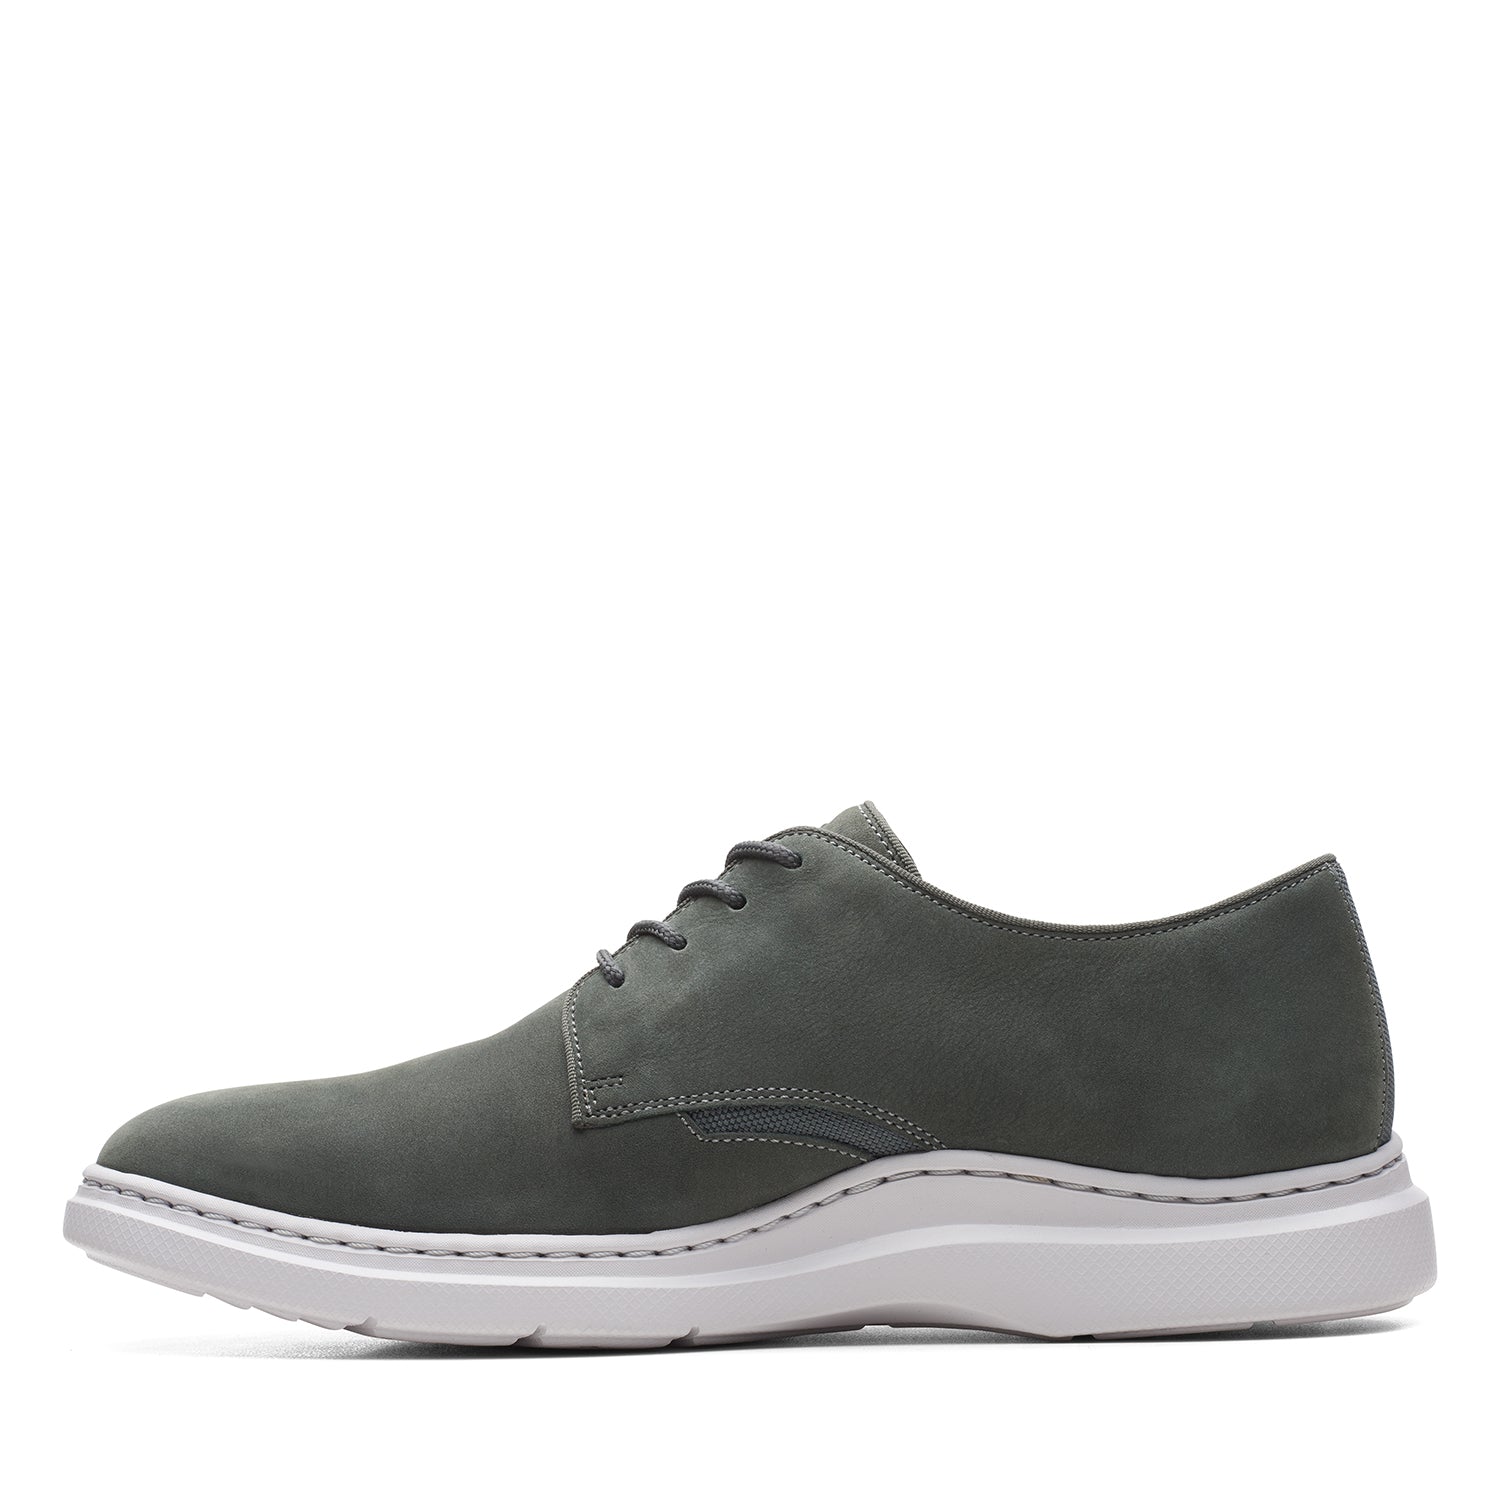 Clarks Dennet Low Shoes - Dark Grey Nubuck - 261635787 - G Width (Standard Fit)